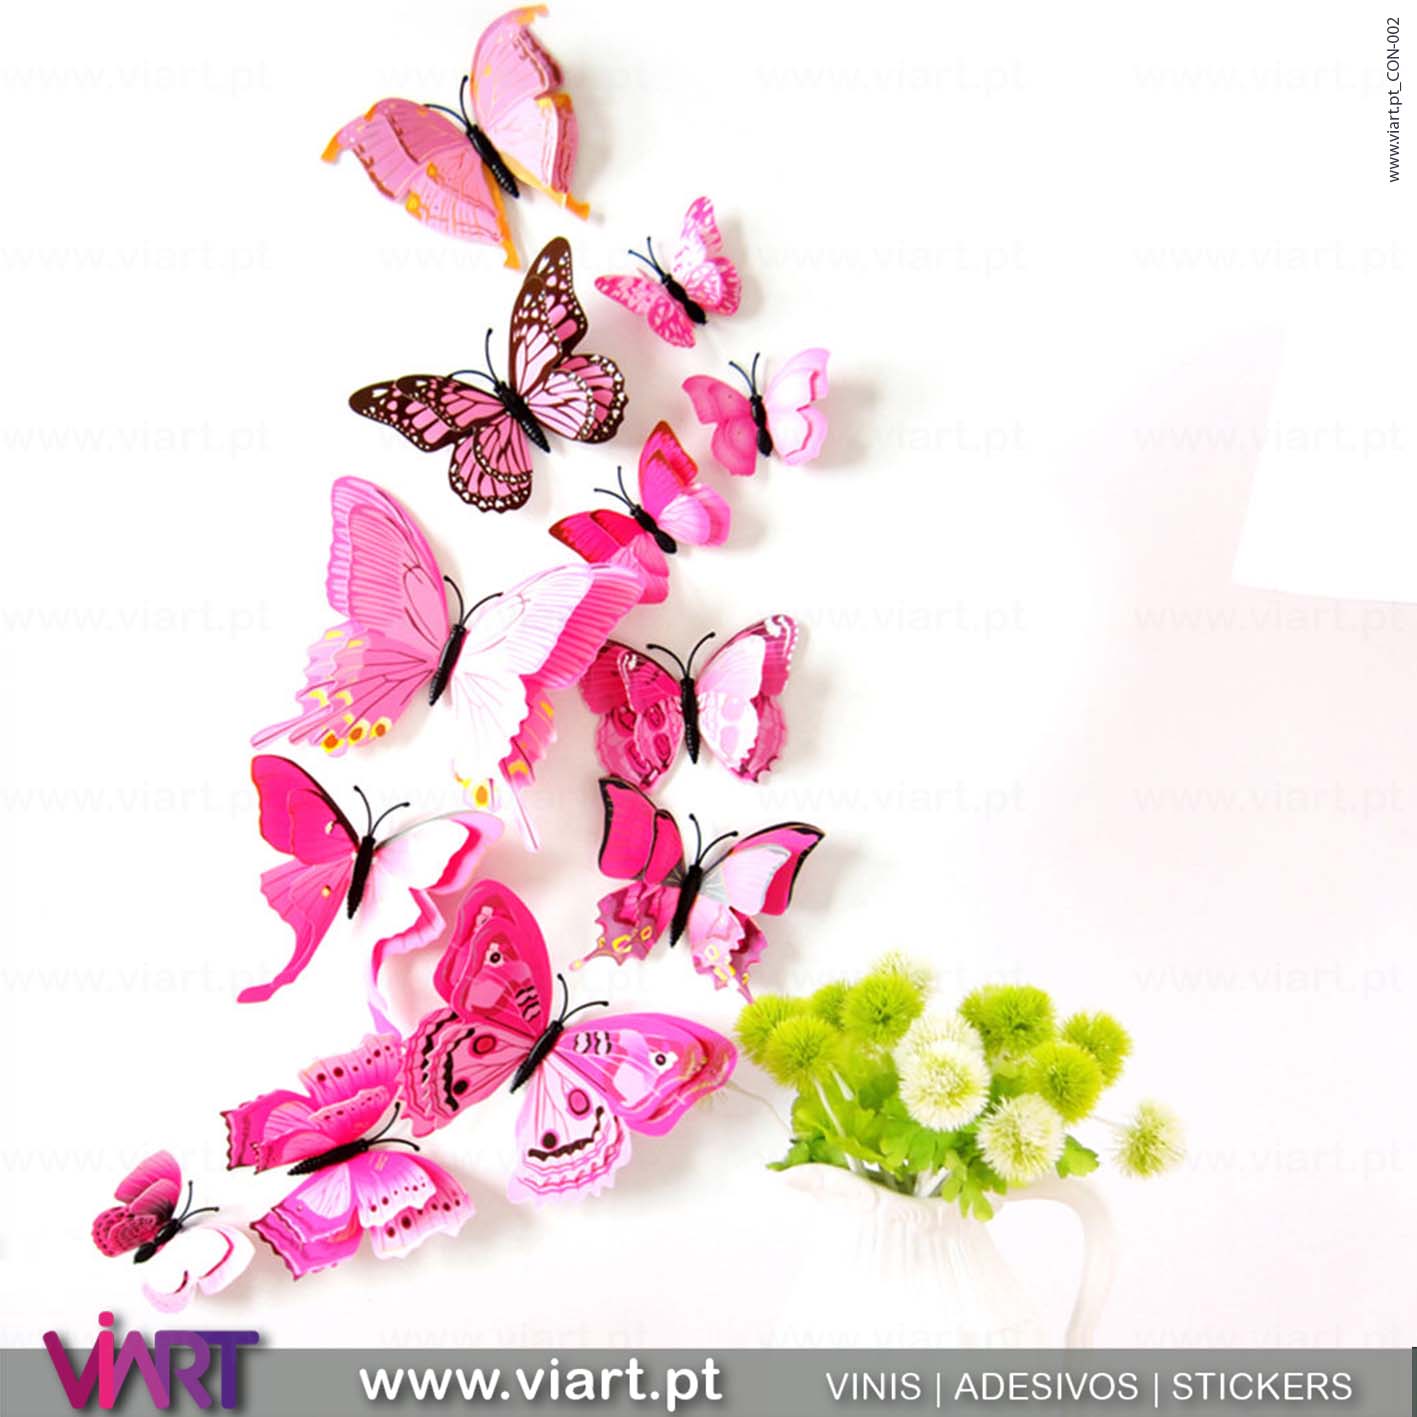 Viart - Vinis autocolantes decorativos - Adesivo decoração - Borboletas Cor de Rosa! Magnéticas! Efeito 3D